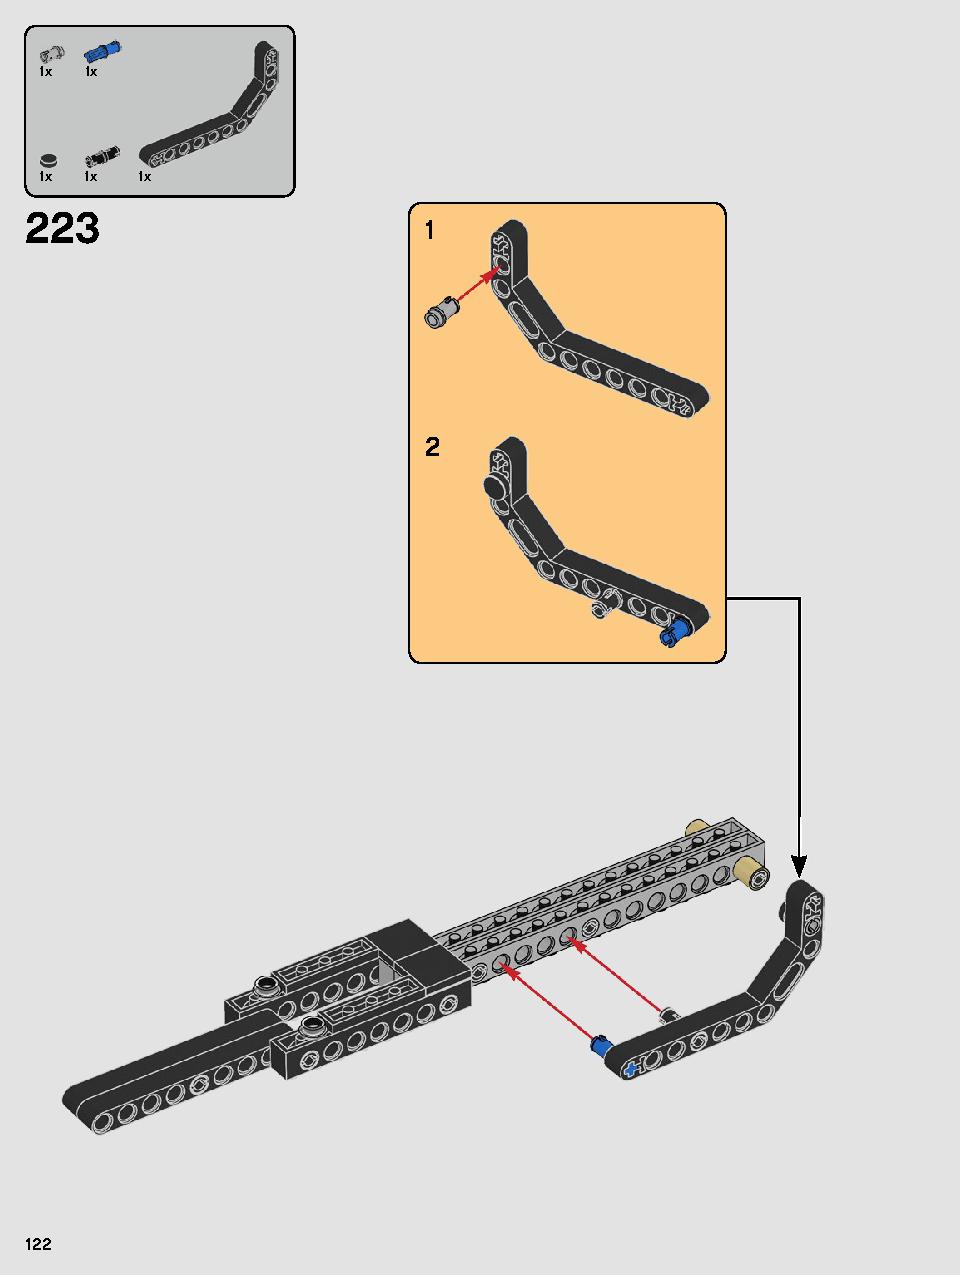 스타워즈 카일로 렌의 셔틀™ 75256 레고 세트 제품정보 레고 조립설명서 122 page